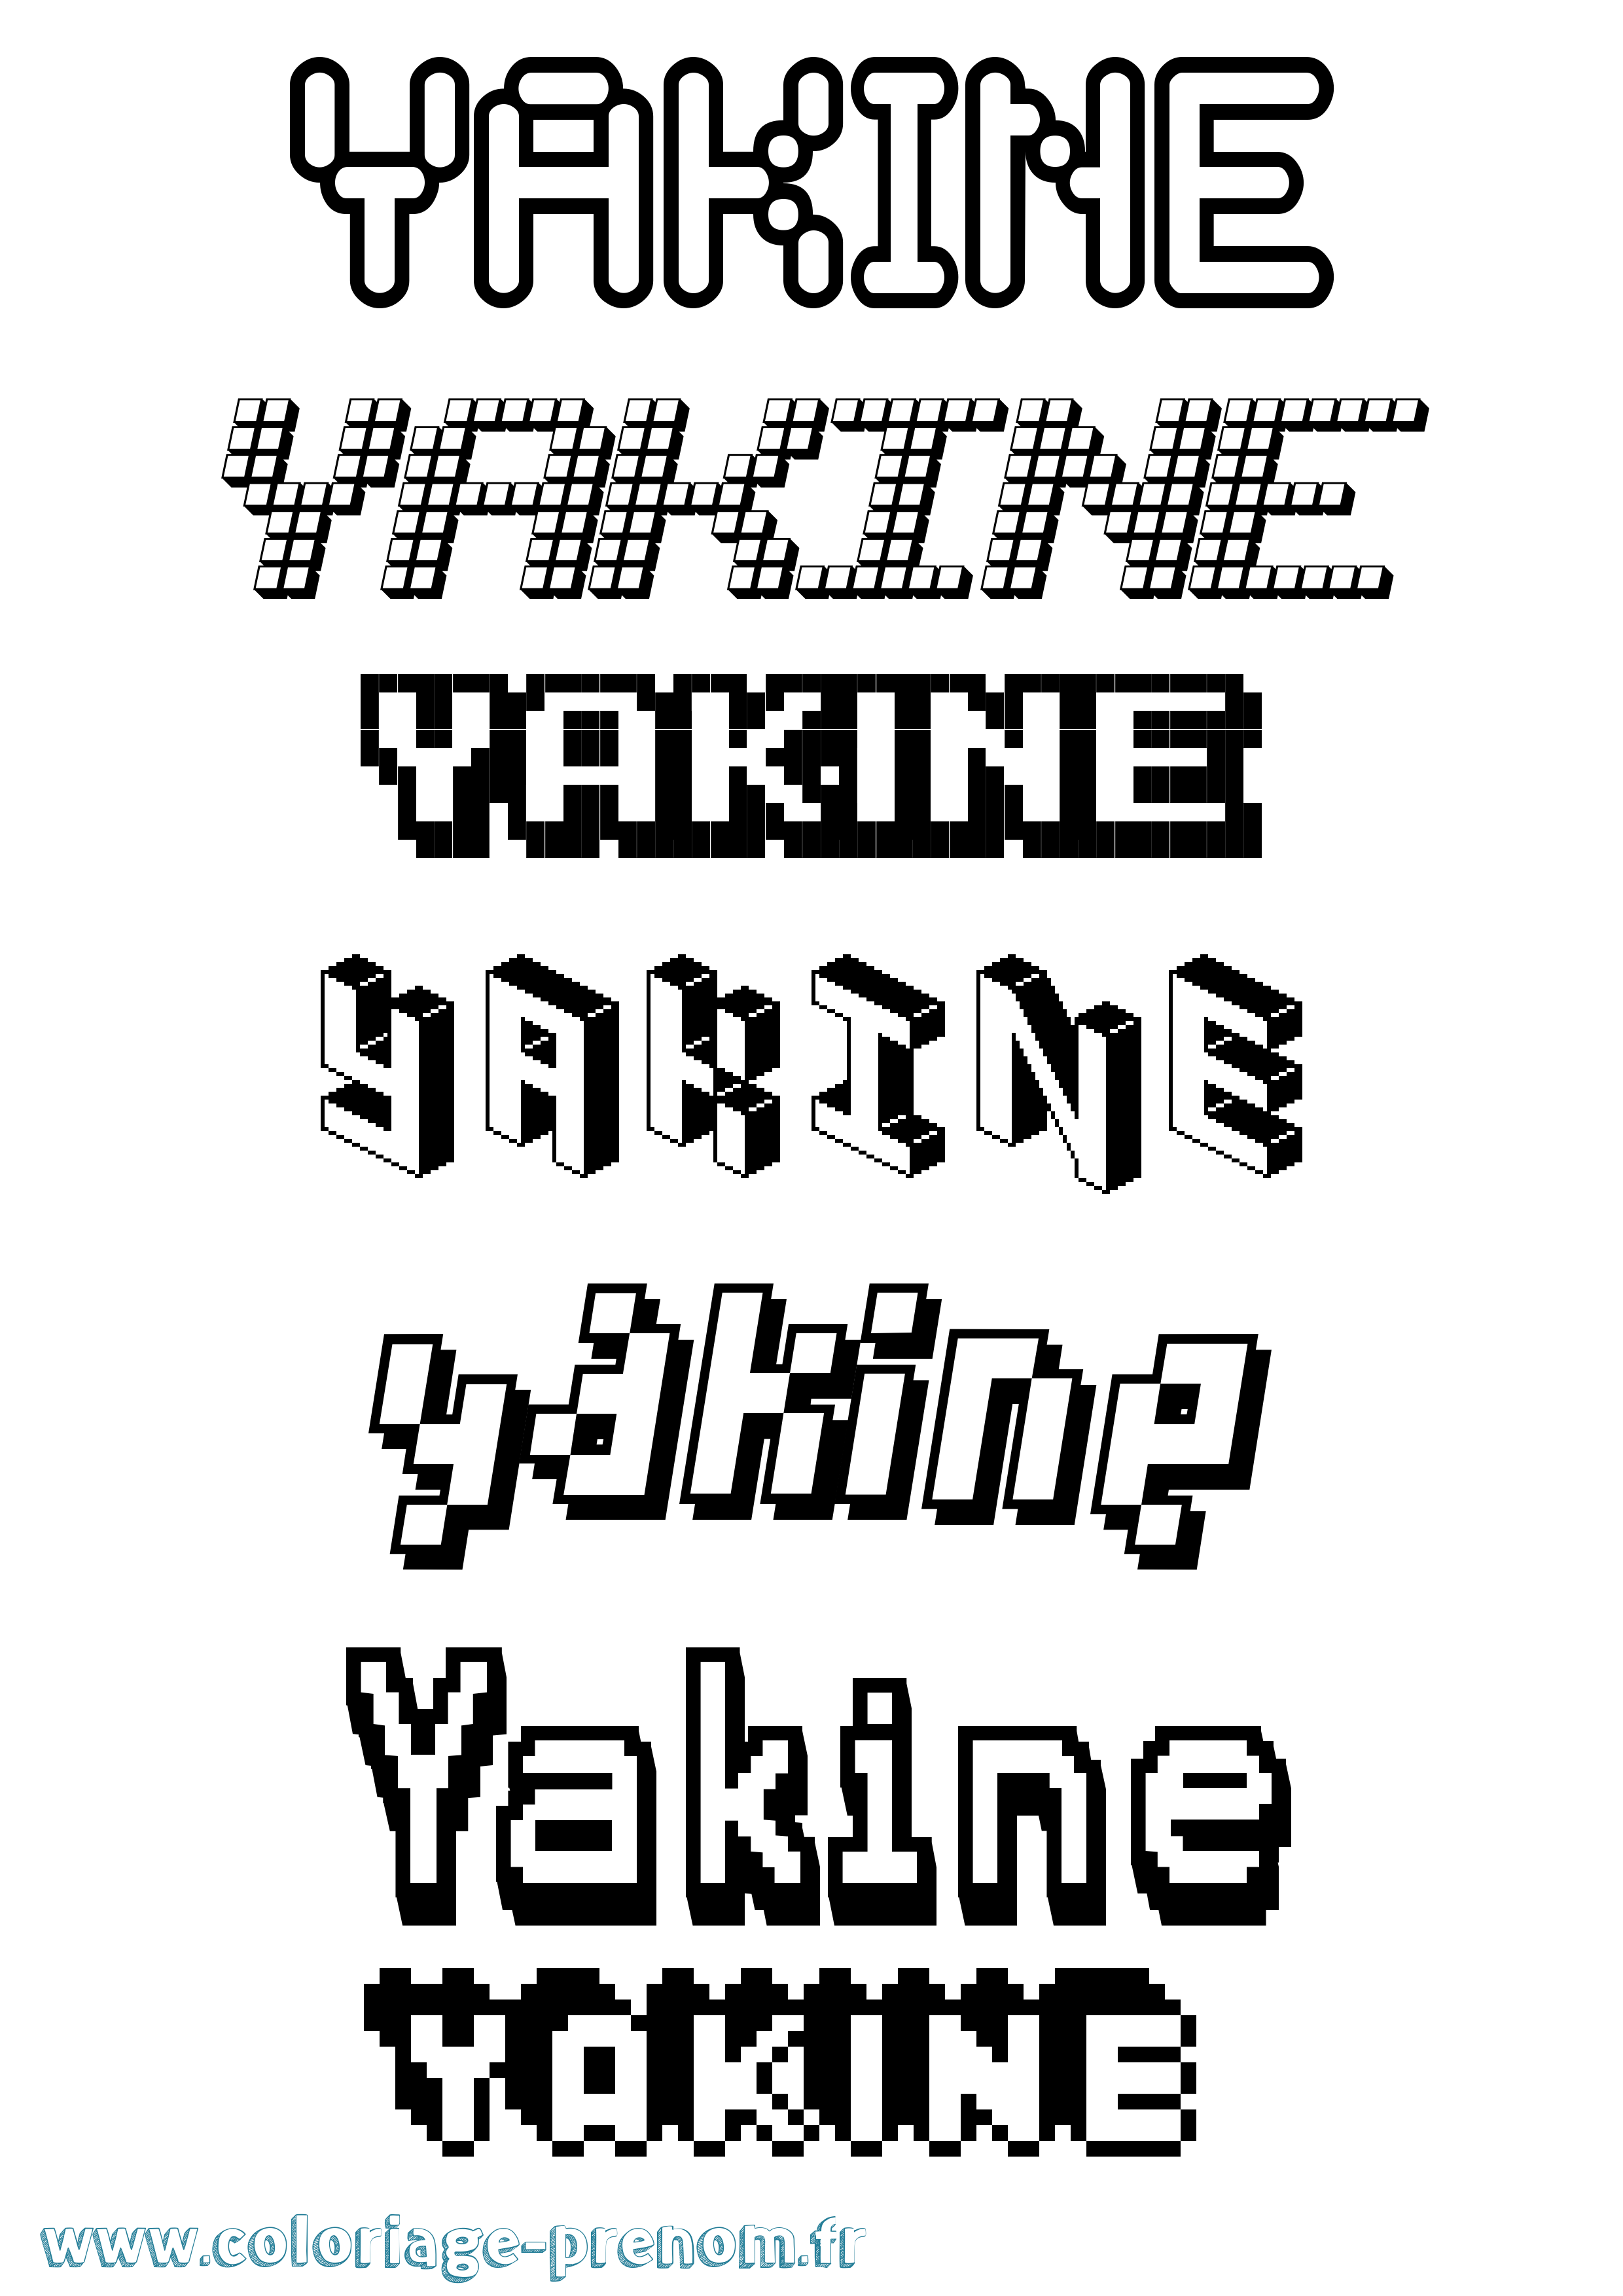 Coloriage prénom Yakine Pixel